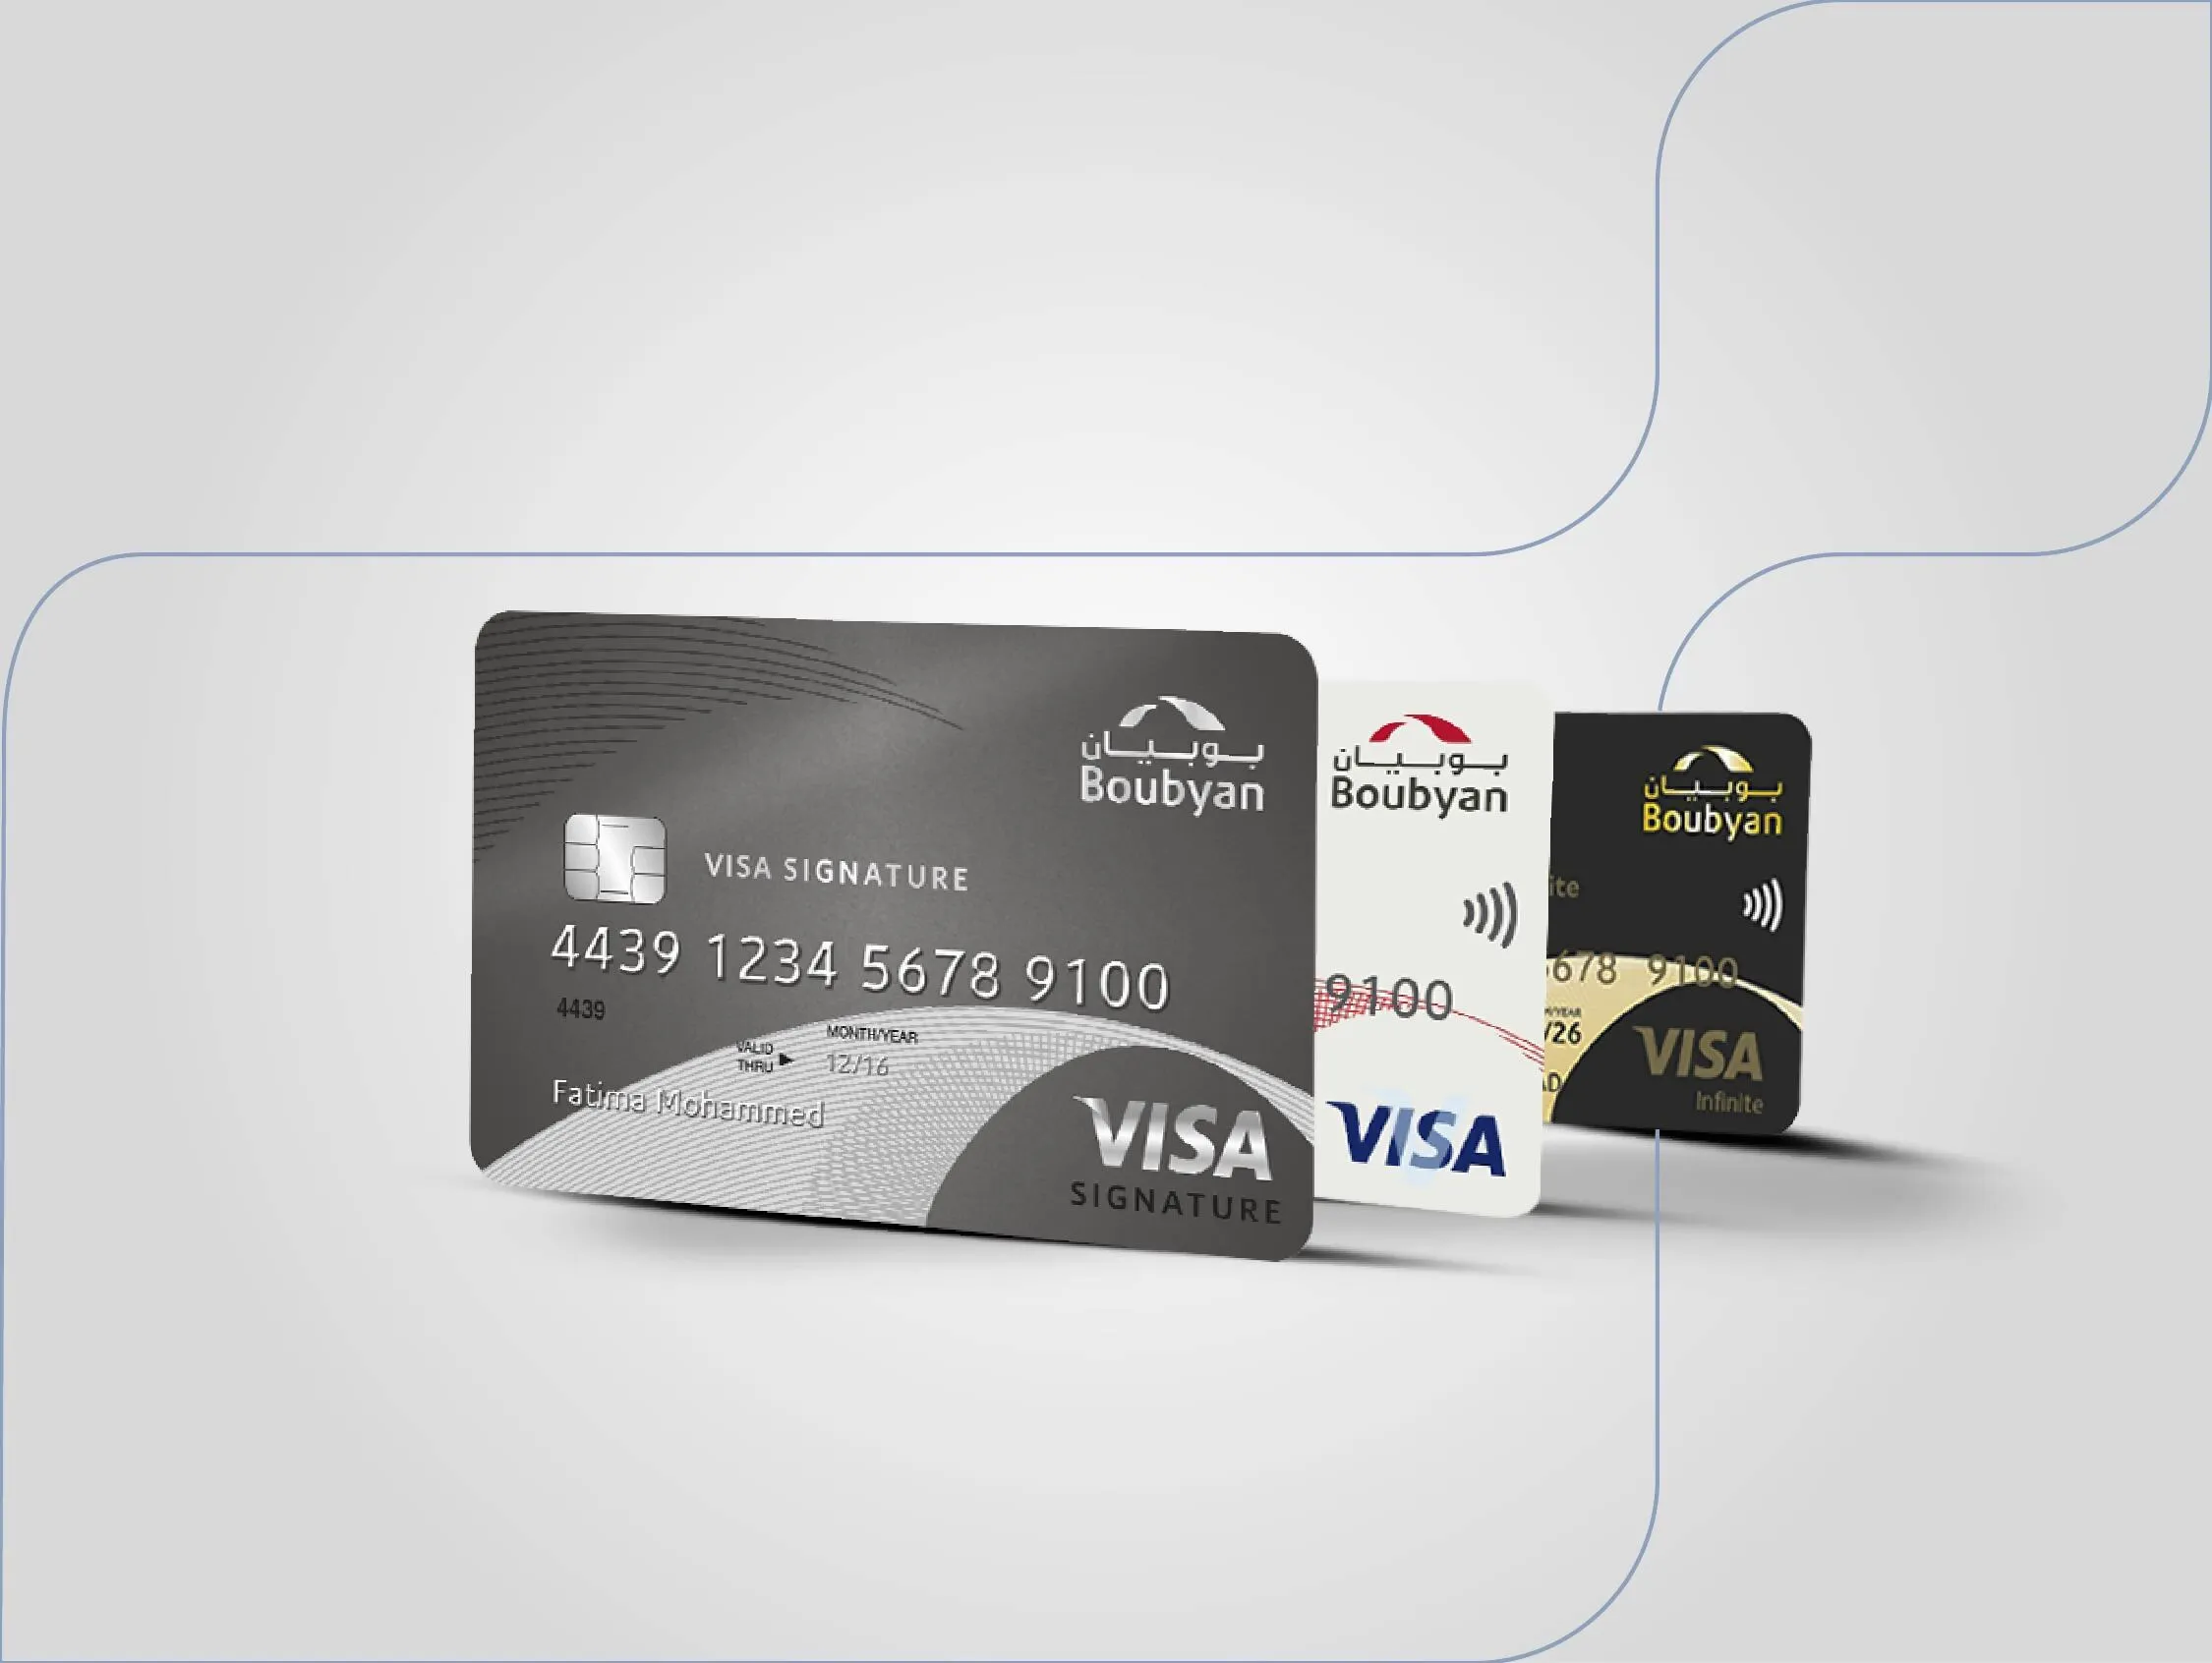 صور للبطاقات ائتمانية وللبطاقات الرقمية مسبقة لدفع لحساب التقاعد من بنك بوبيان